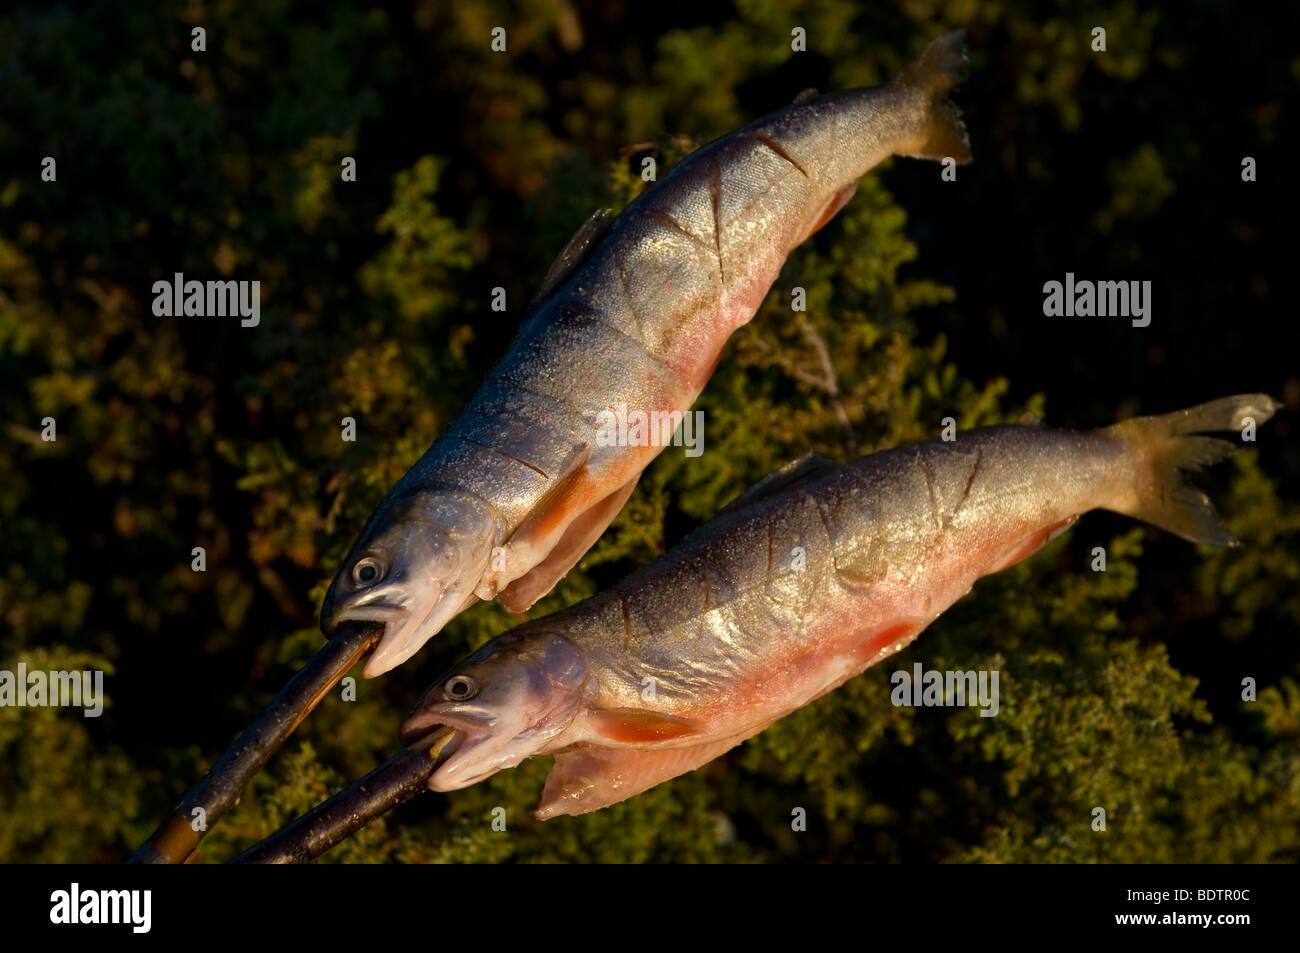 Gegrillet aufgespiesster fisch wird, le poisson est la torréfaction sur la broche, Laponie, Suède Banque D'Images